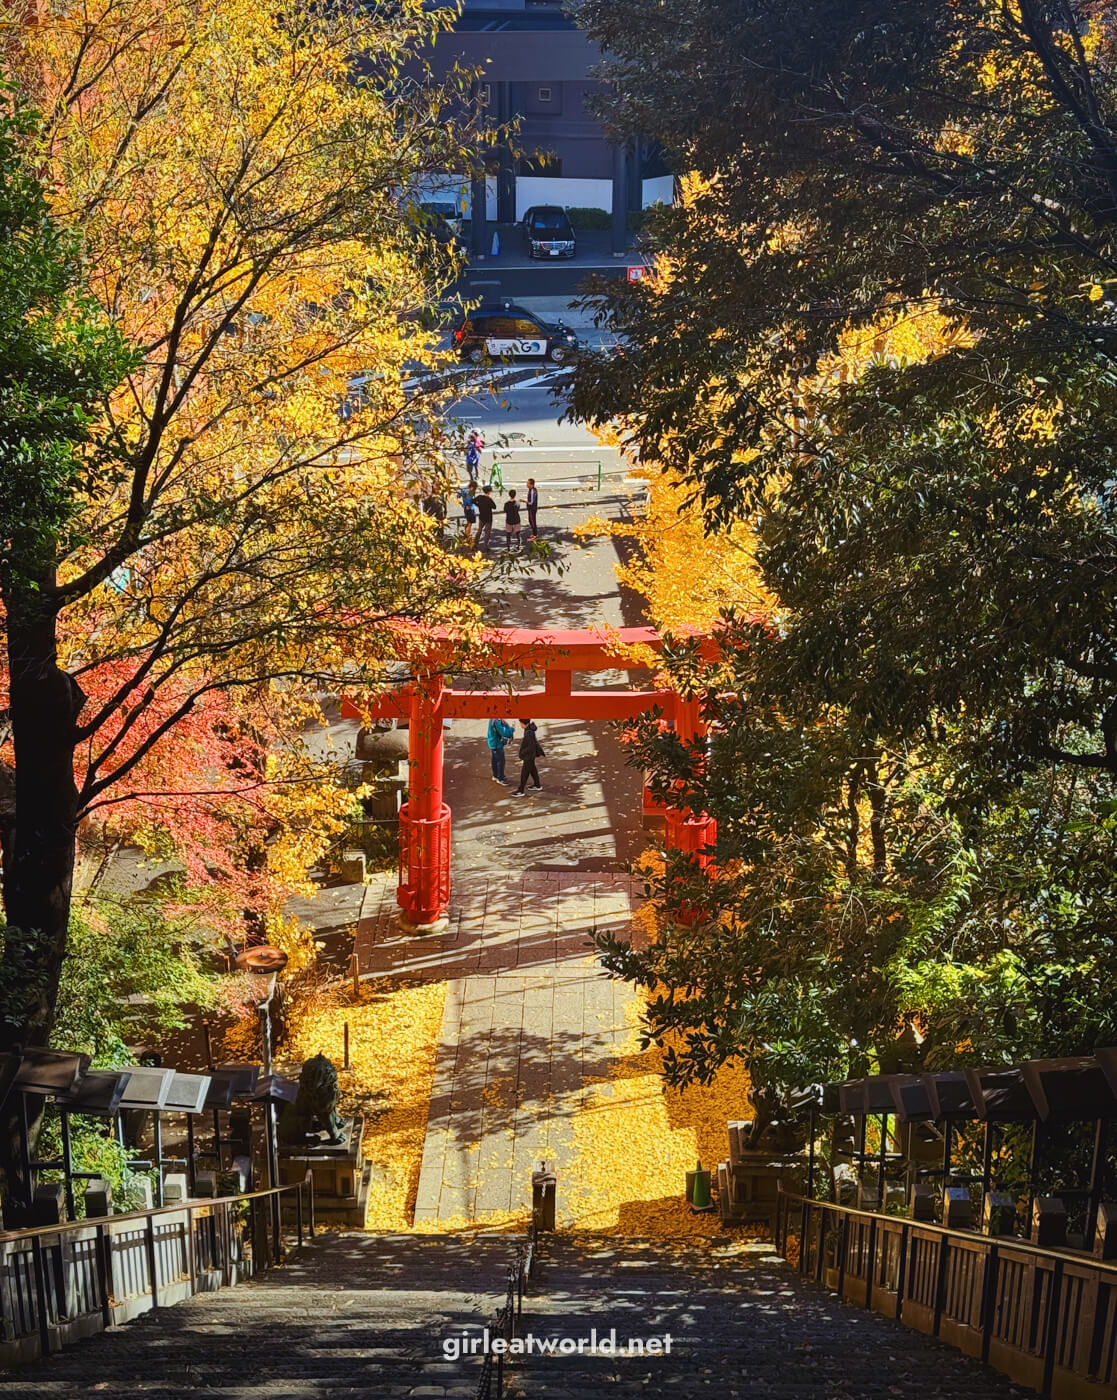 Atago Shrine in Tokyo